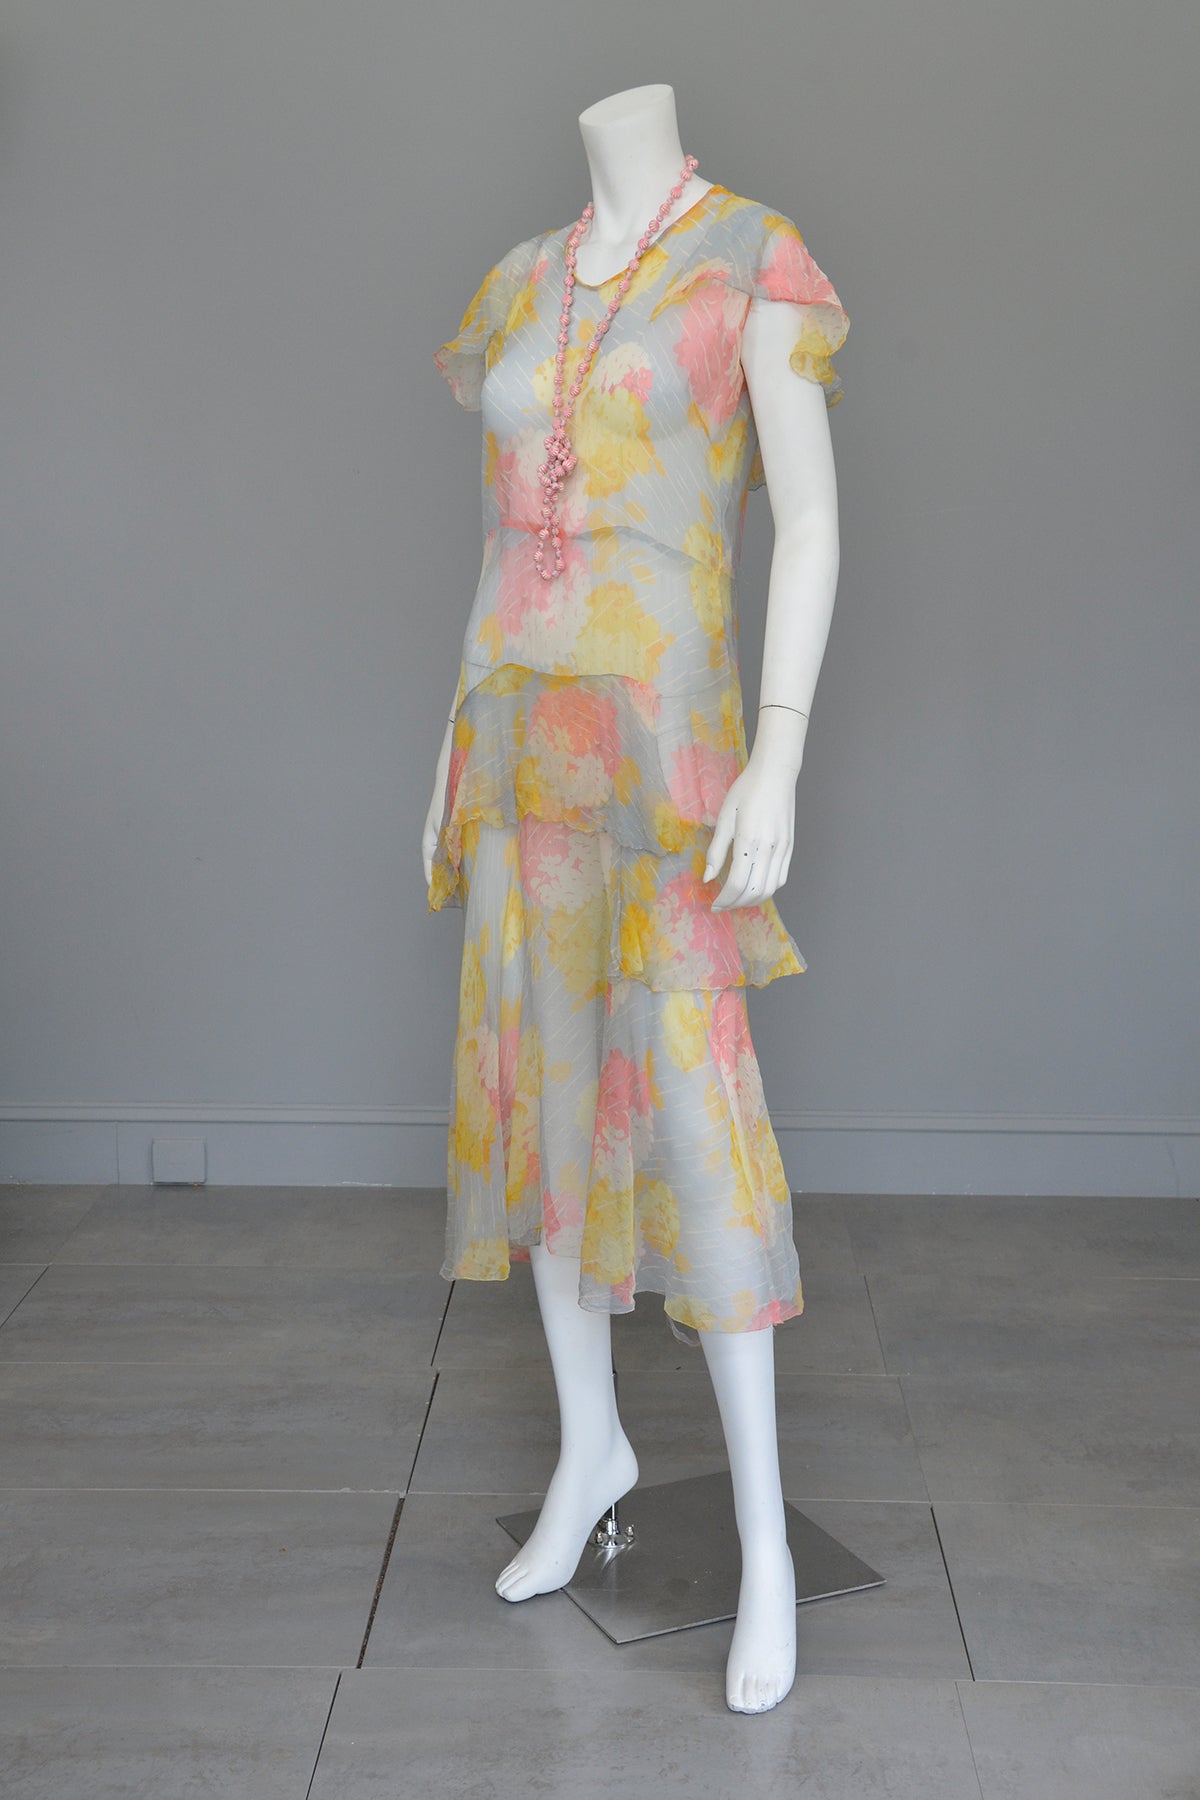 1920s 30s Pastel Floral Print Chiffon Jazz Age Flapper Dress TLC